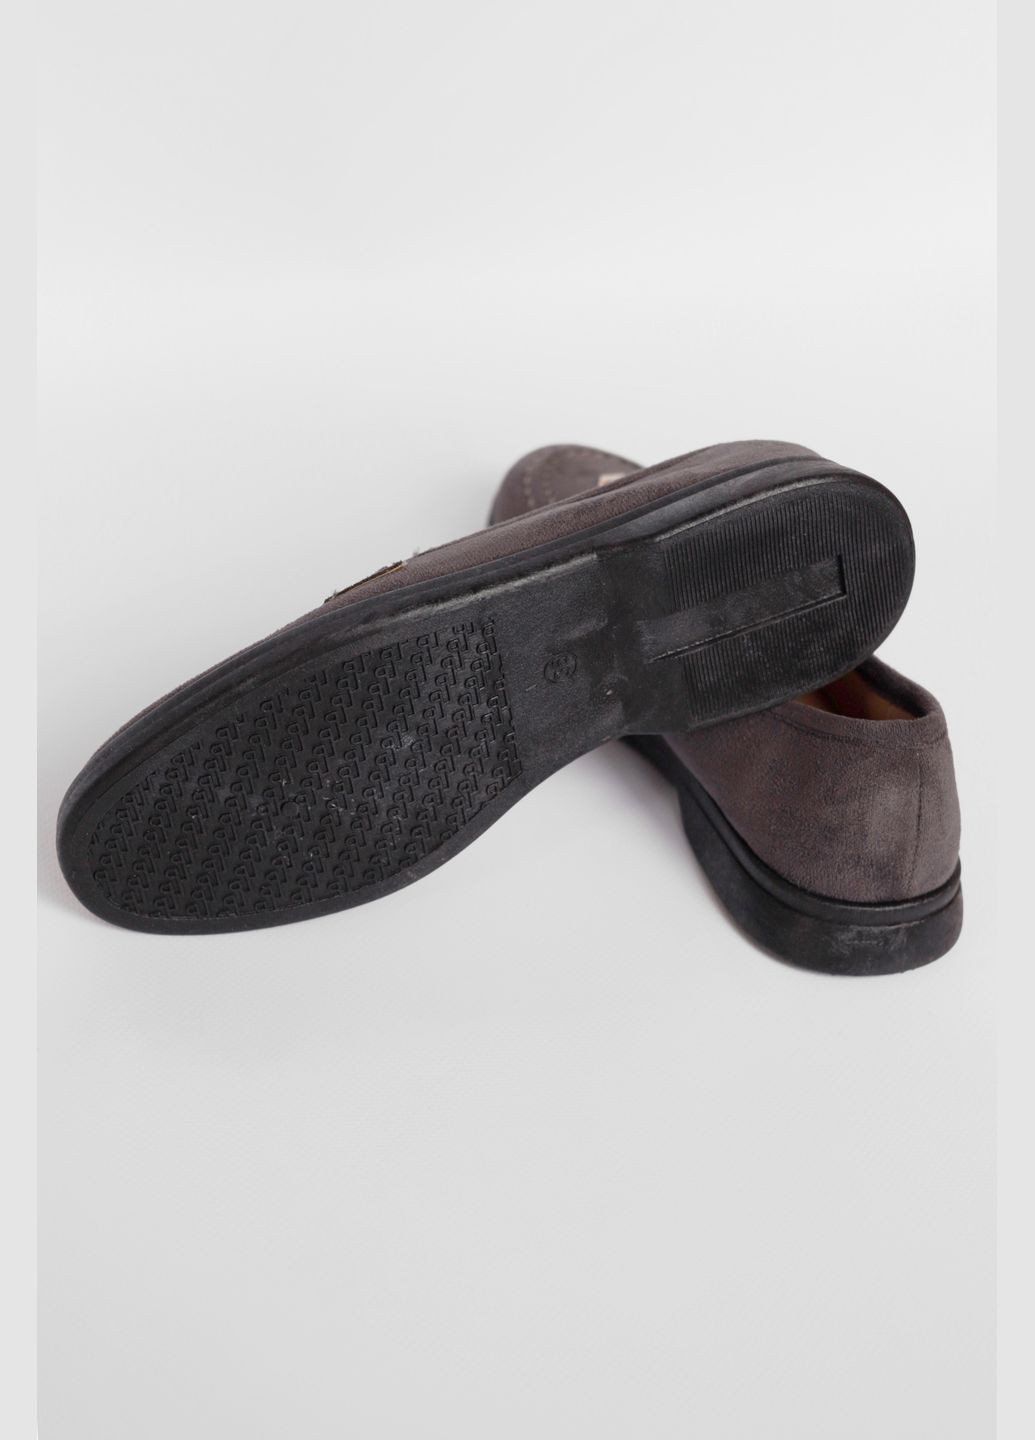 Туфли-лоферы женские темно-серого цвета Let's Shop с цепочками